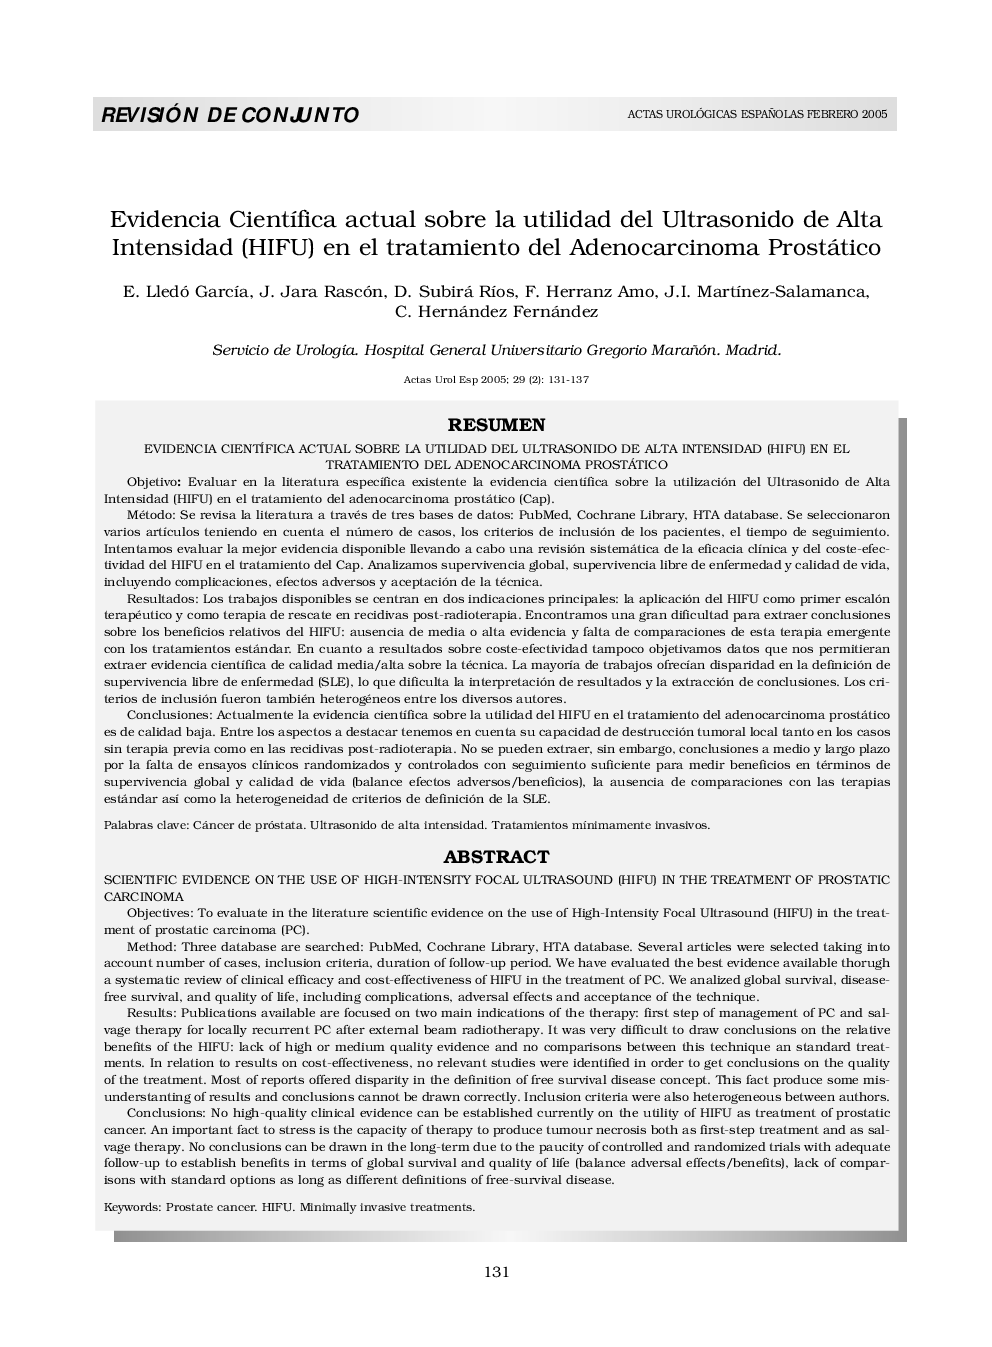 Evidencia CientÃ­fica actual sobre la utilidad del Ultrasonido de Alta Intensidad (HIFU) en el tratamiento del Adenocarcinoma Prostático